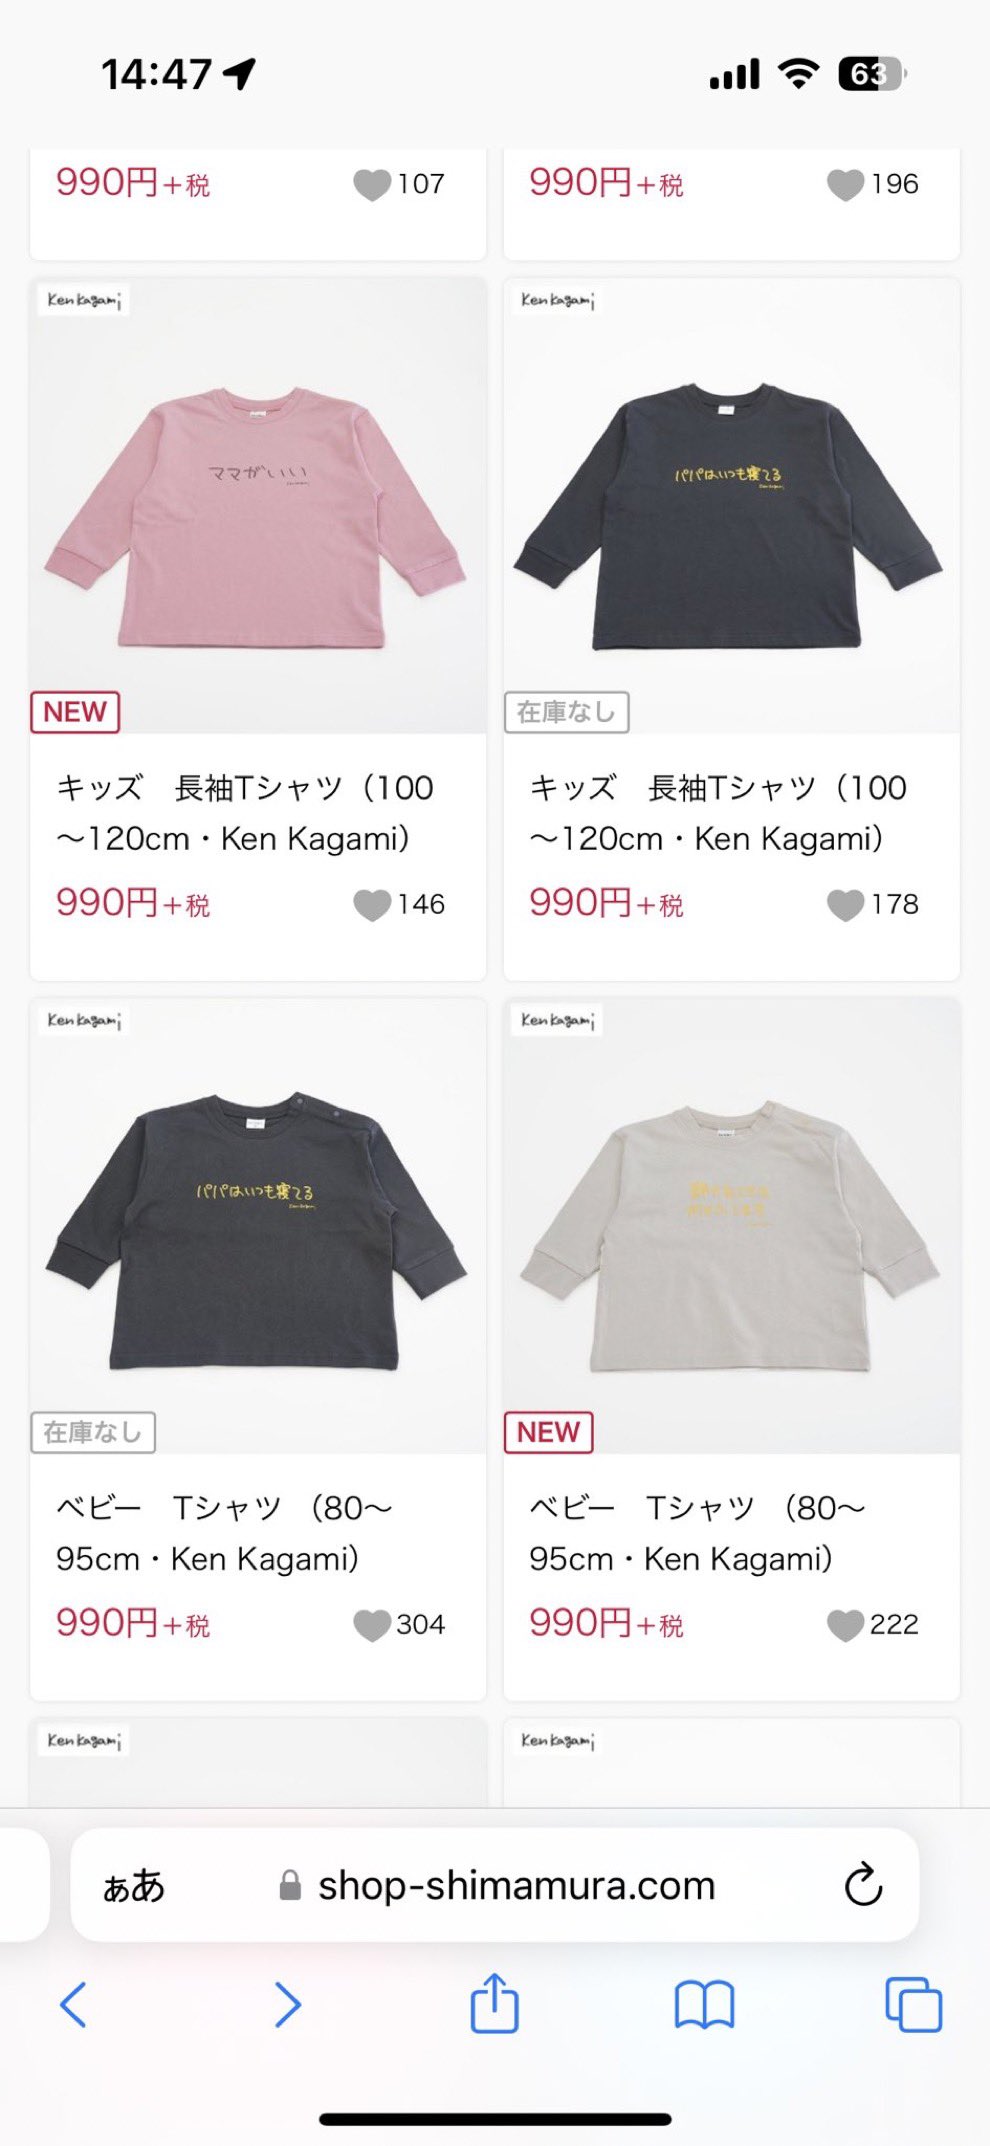 系列上衣售價990日圓（未計稅）一件。